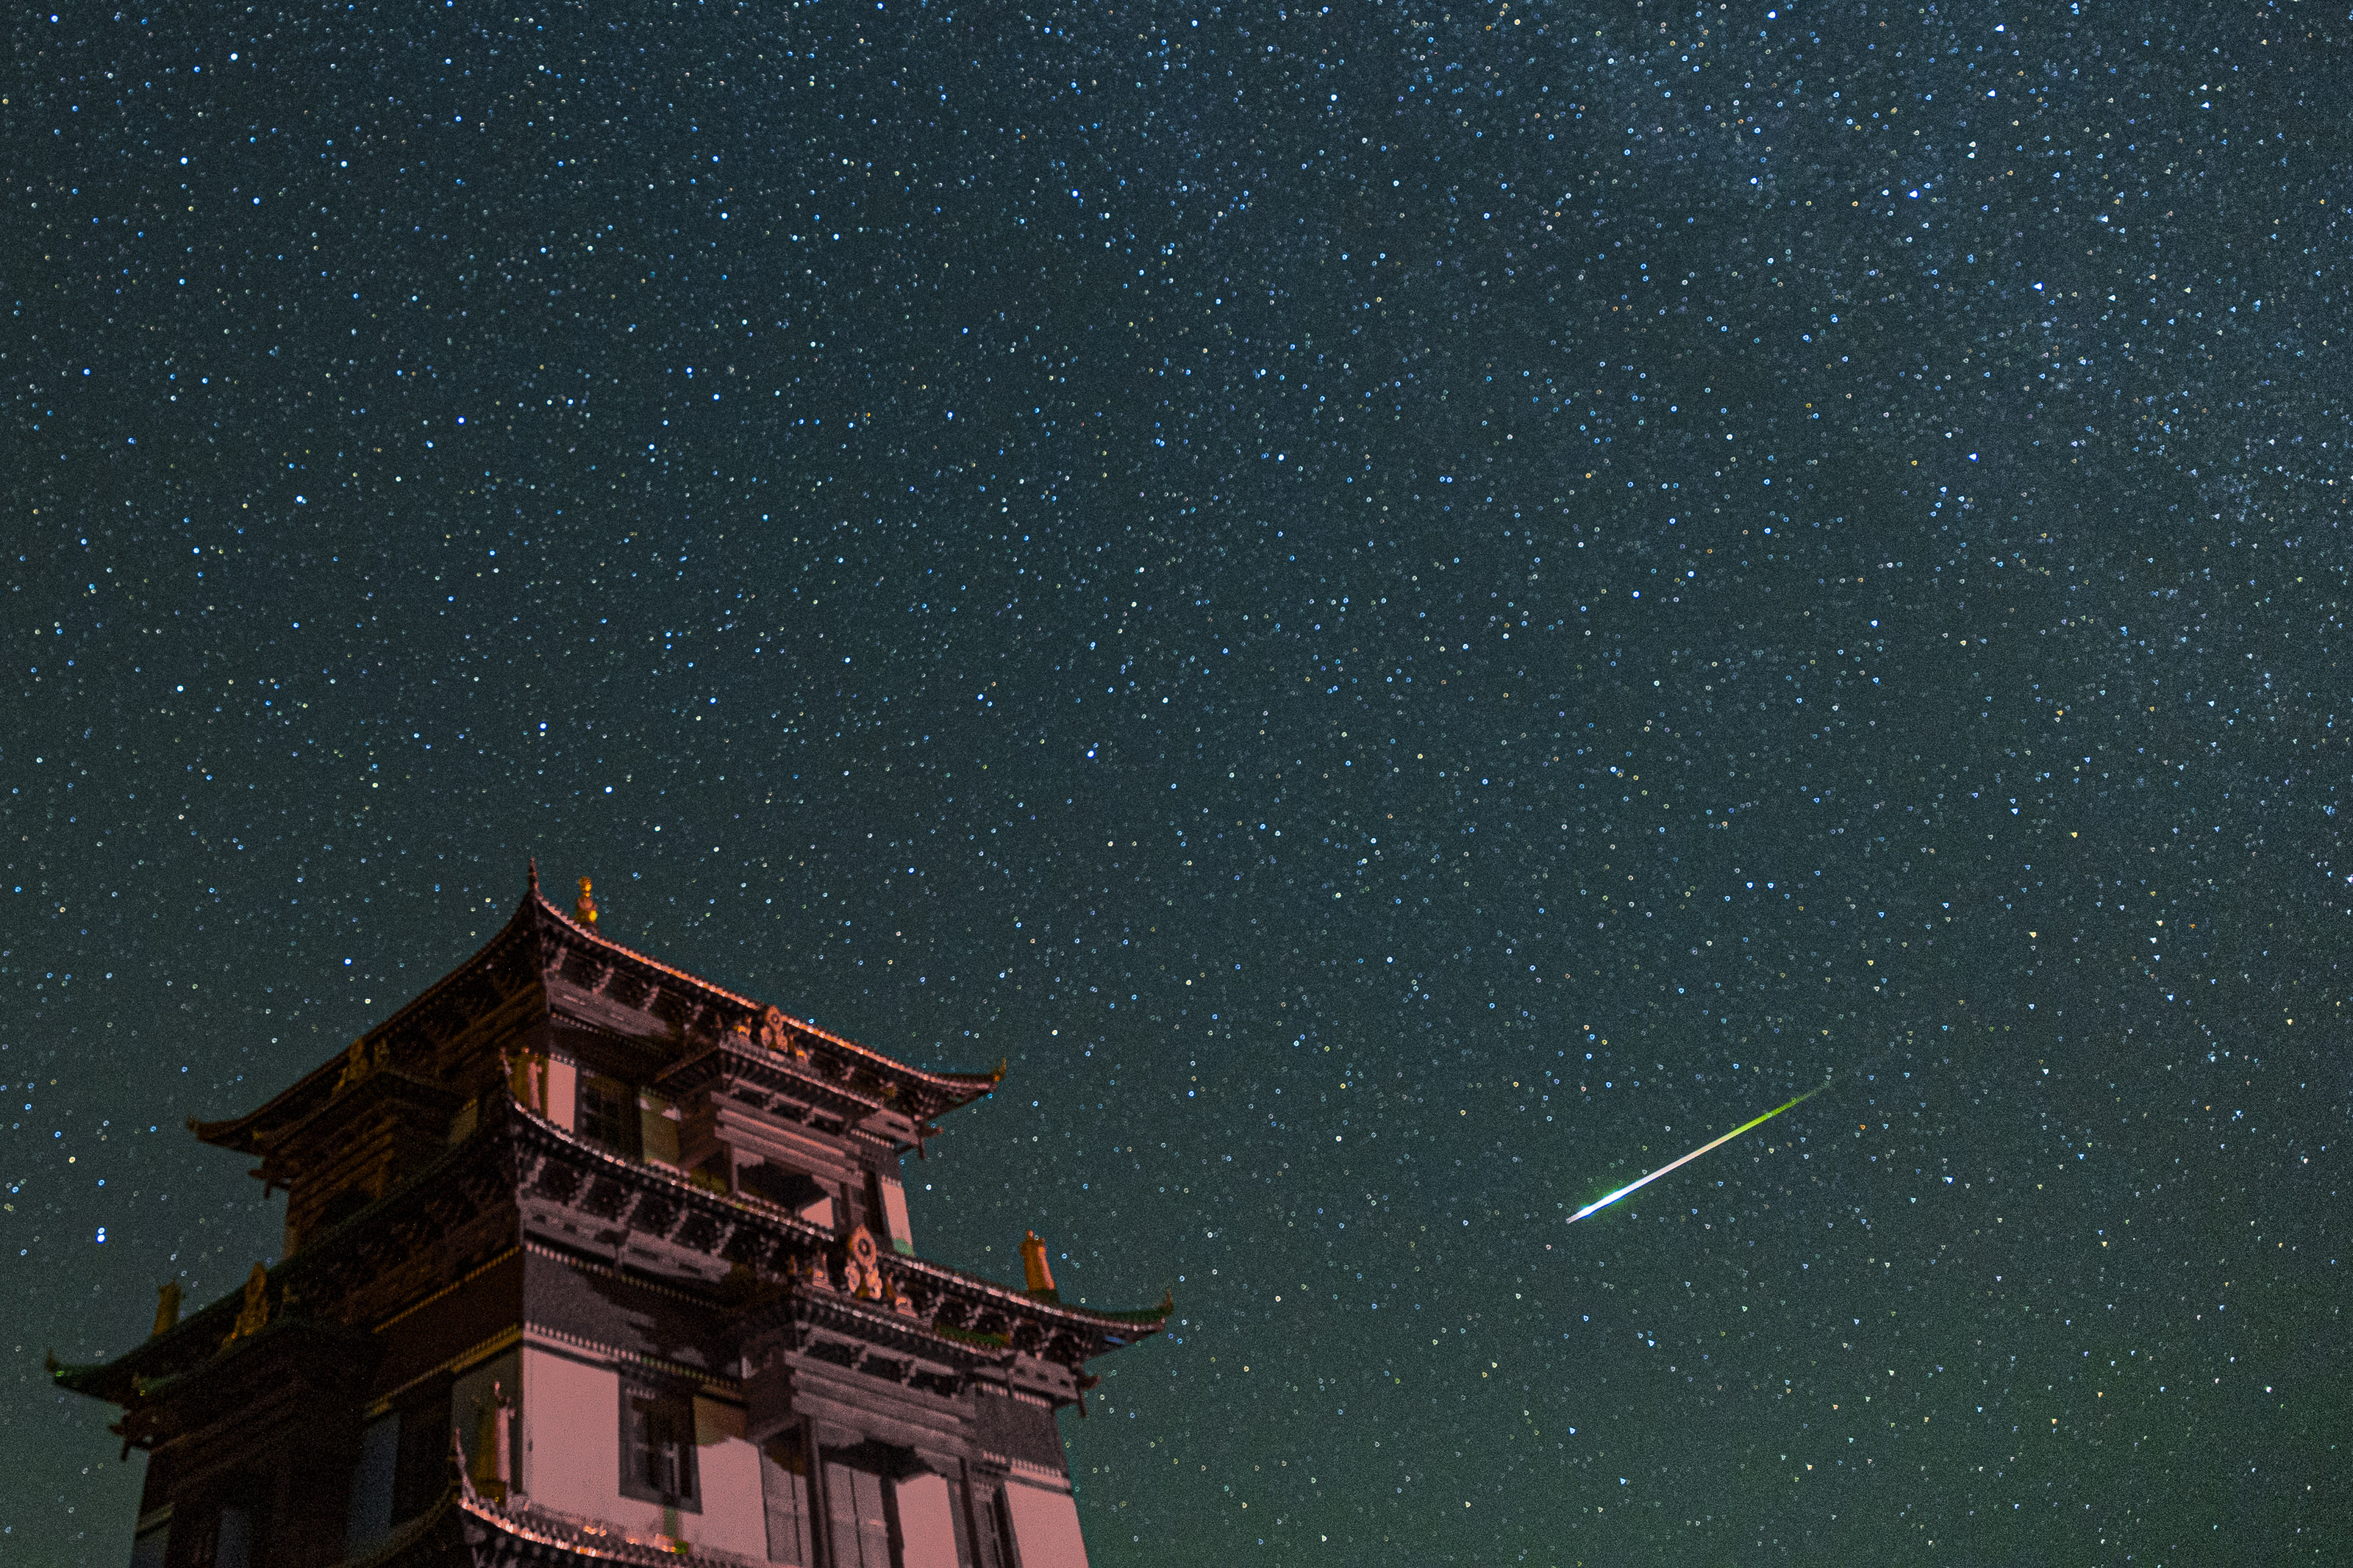 Un grand bâtiment sur la gauche et un météore blanc brillant traversant le ciel étoilé.